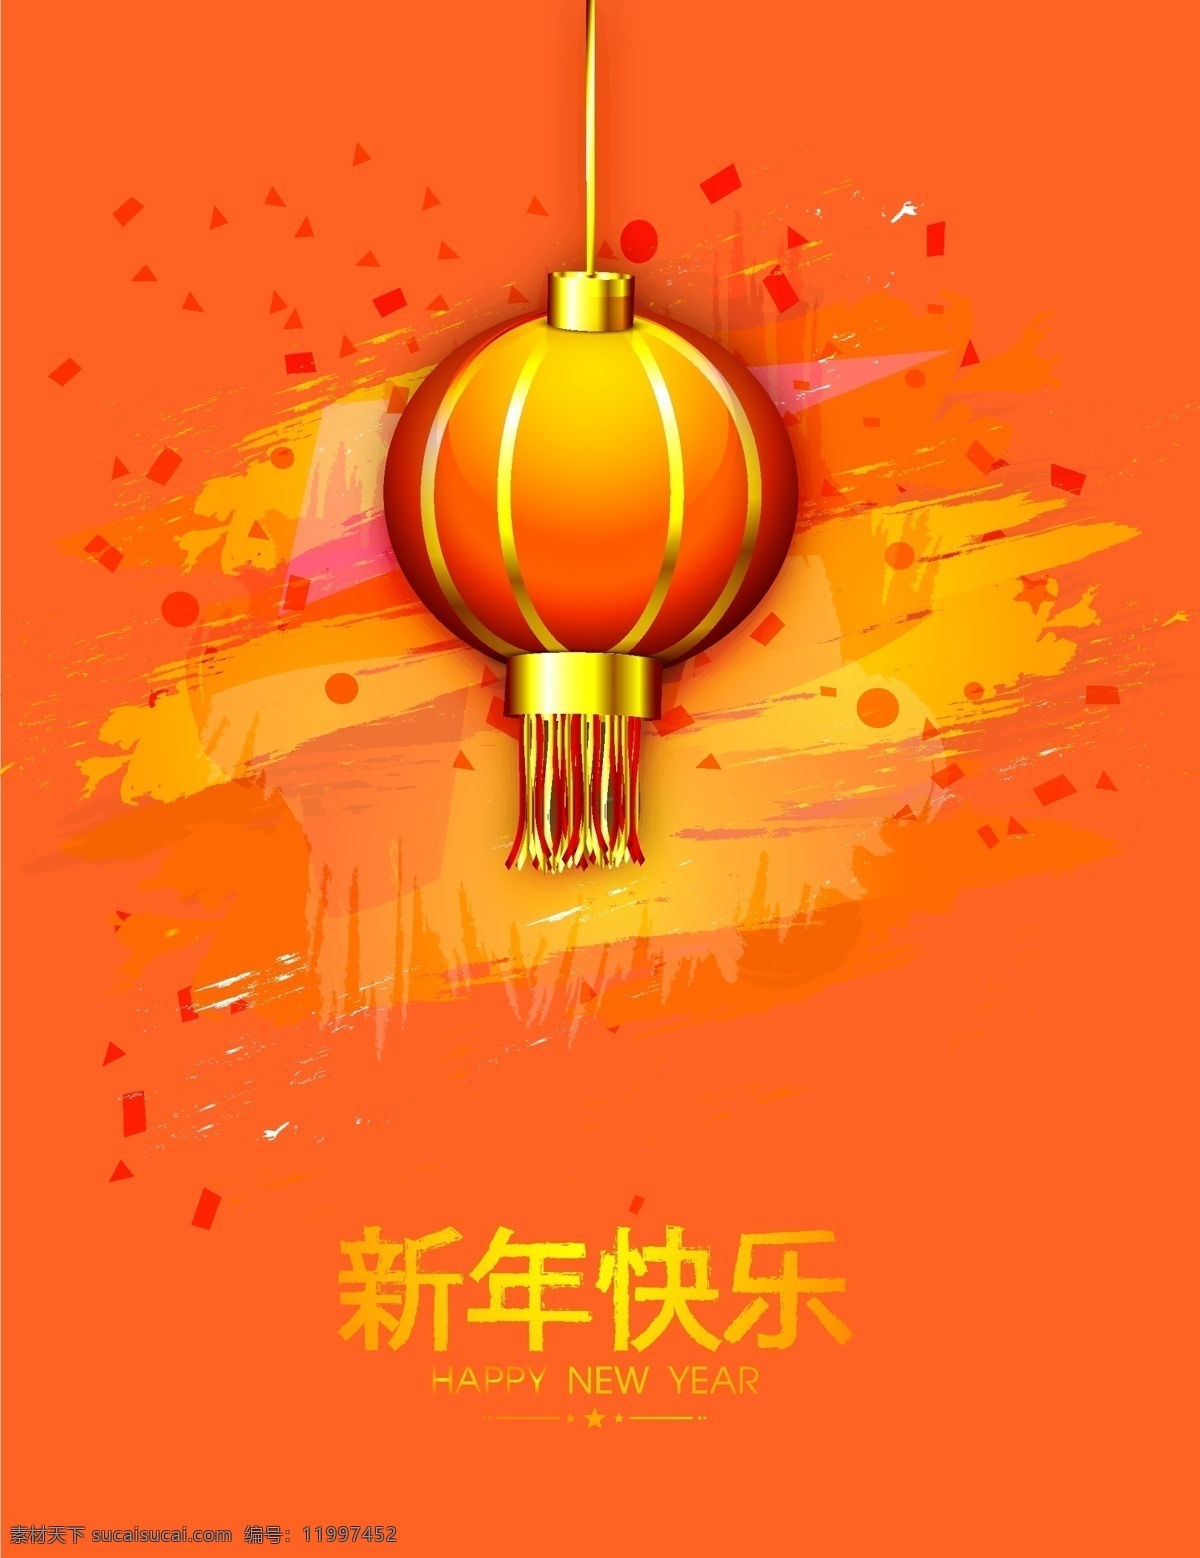 矢量 橙色 灯笼 新年 庆祝 背景 质感 涂鸦 新年快乐 水彩